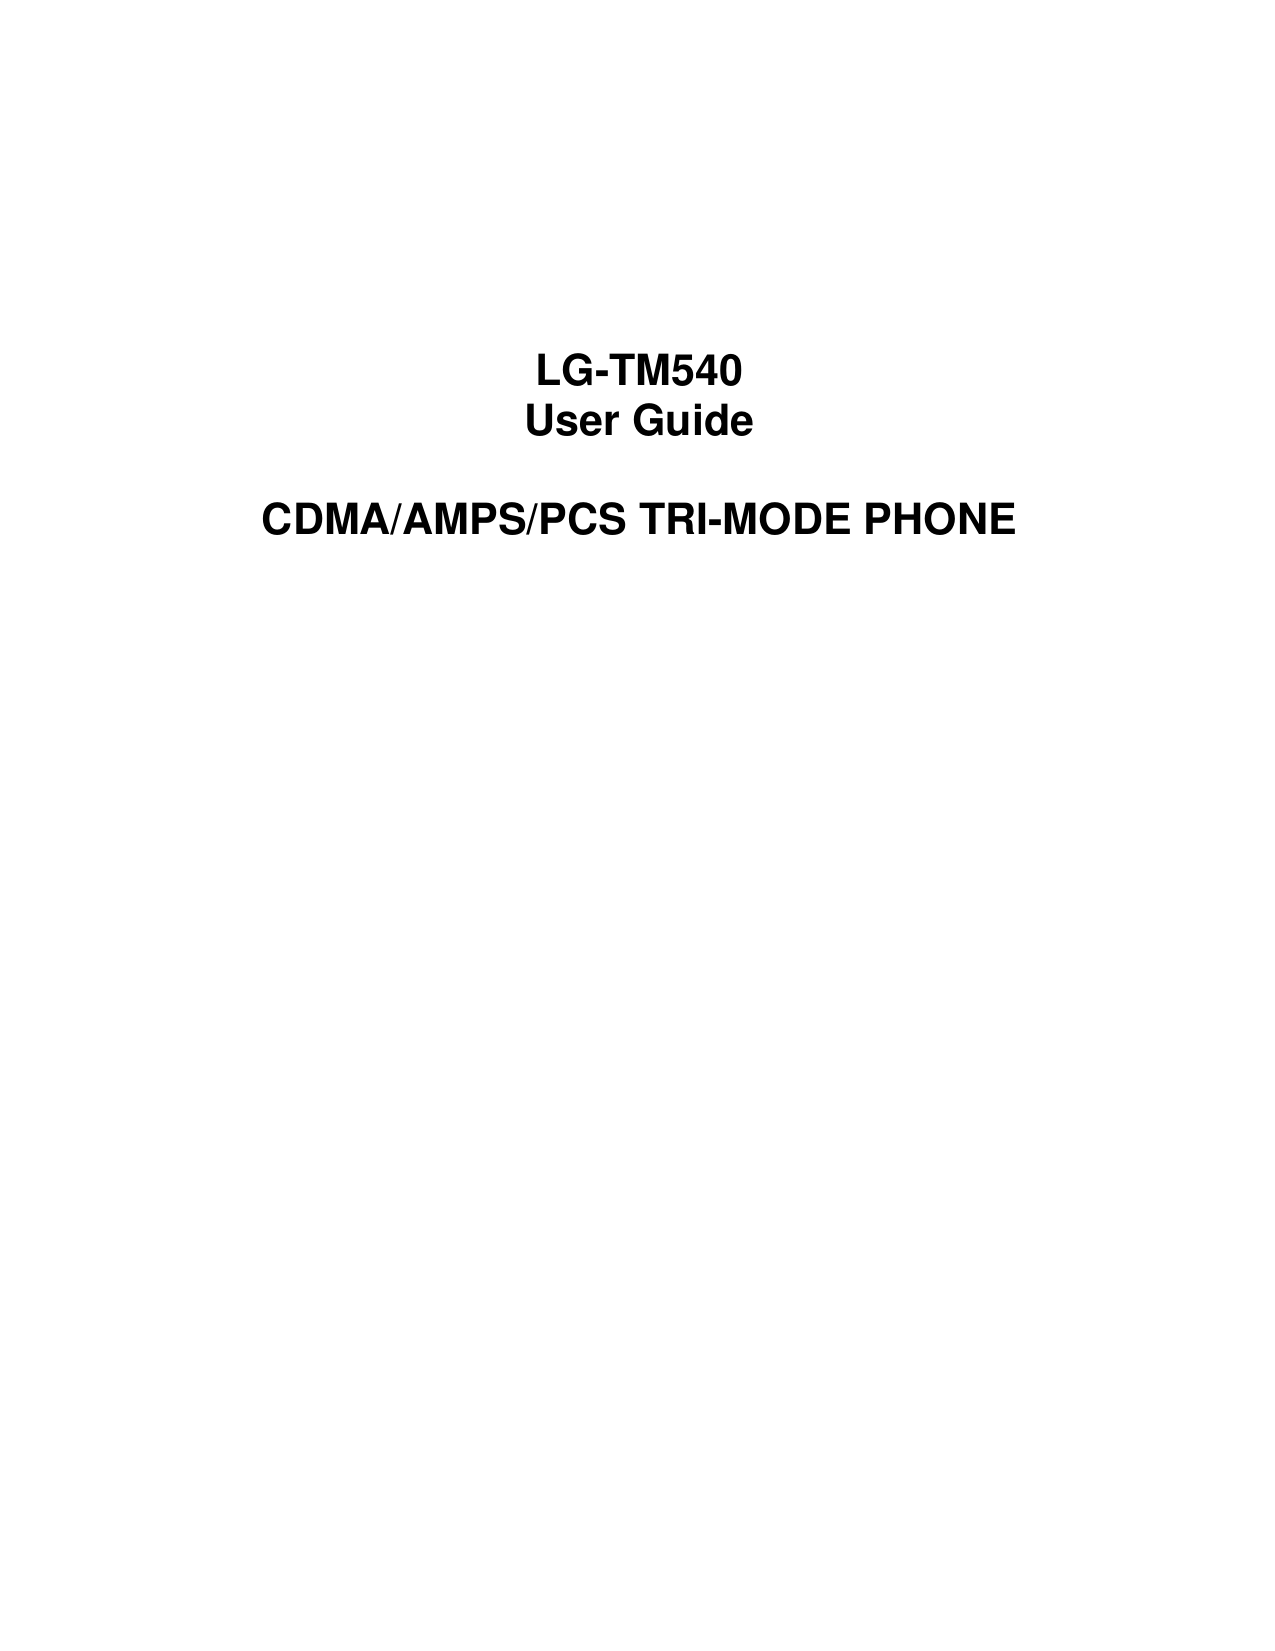    LG-TM540 User Guide  CDMA/AMPS/PCS TRI-MODE PHONE                           